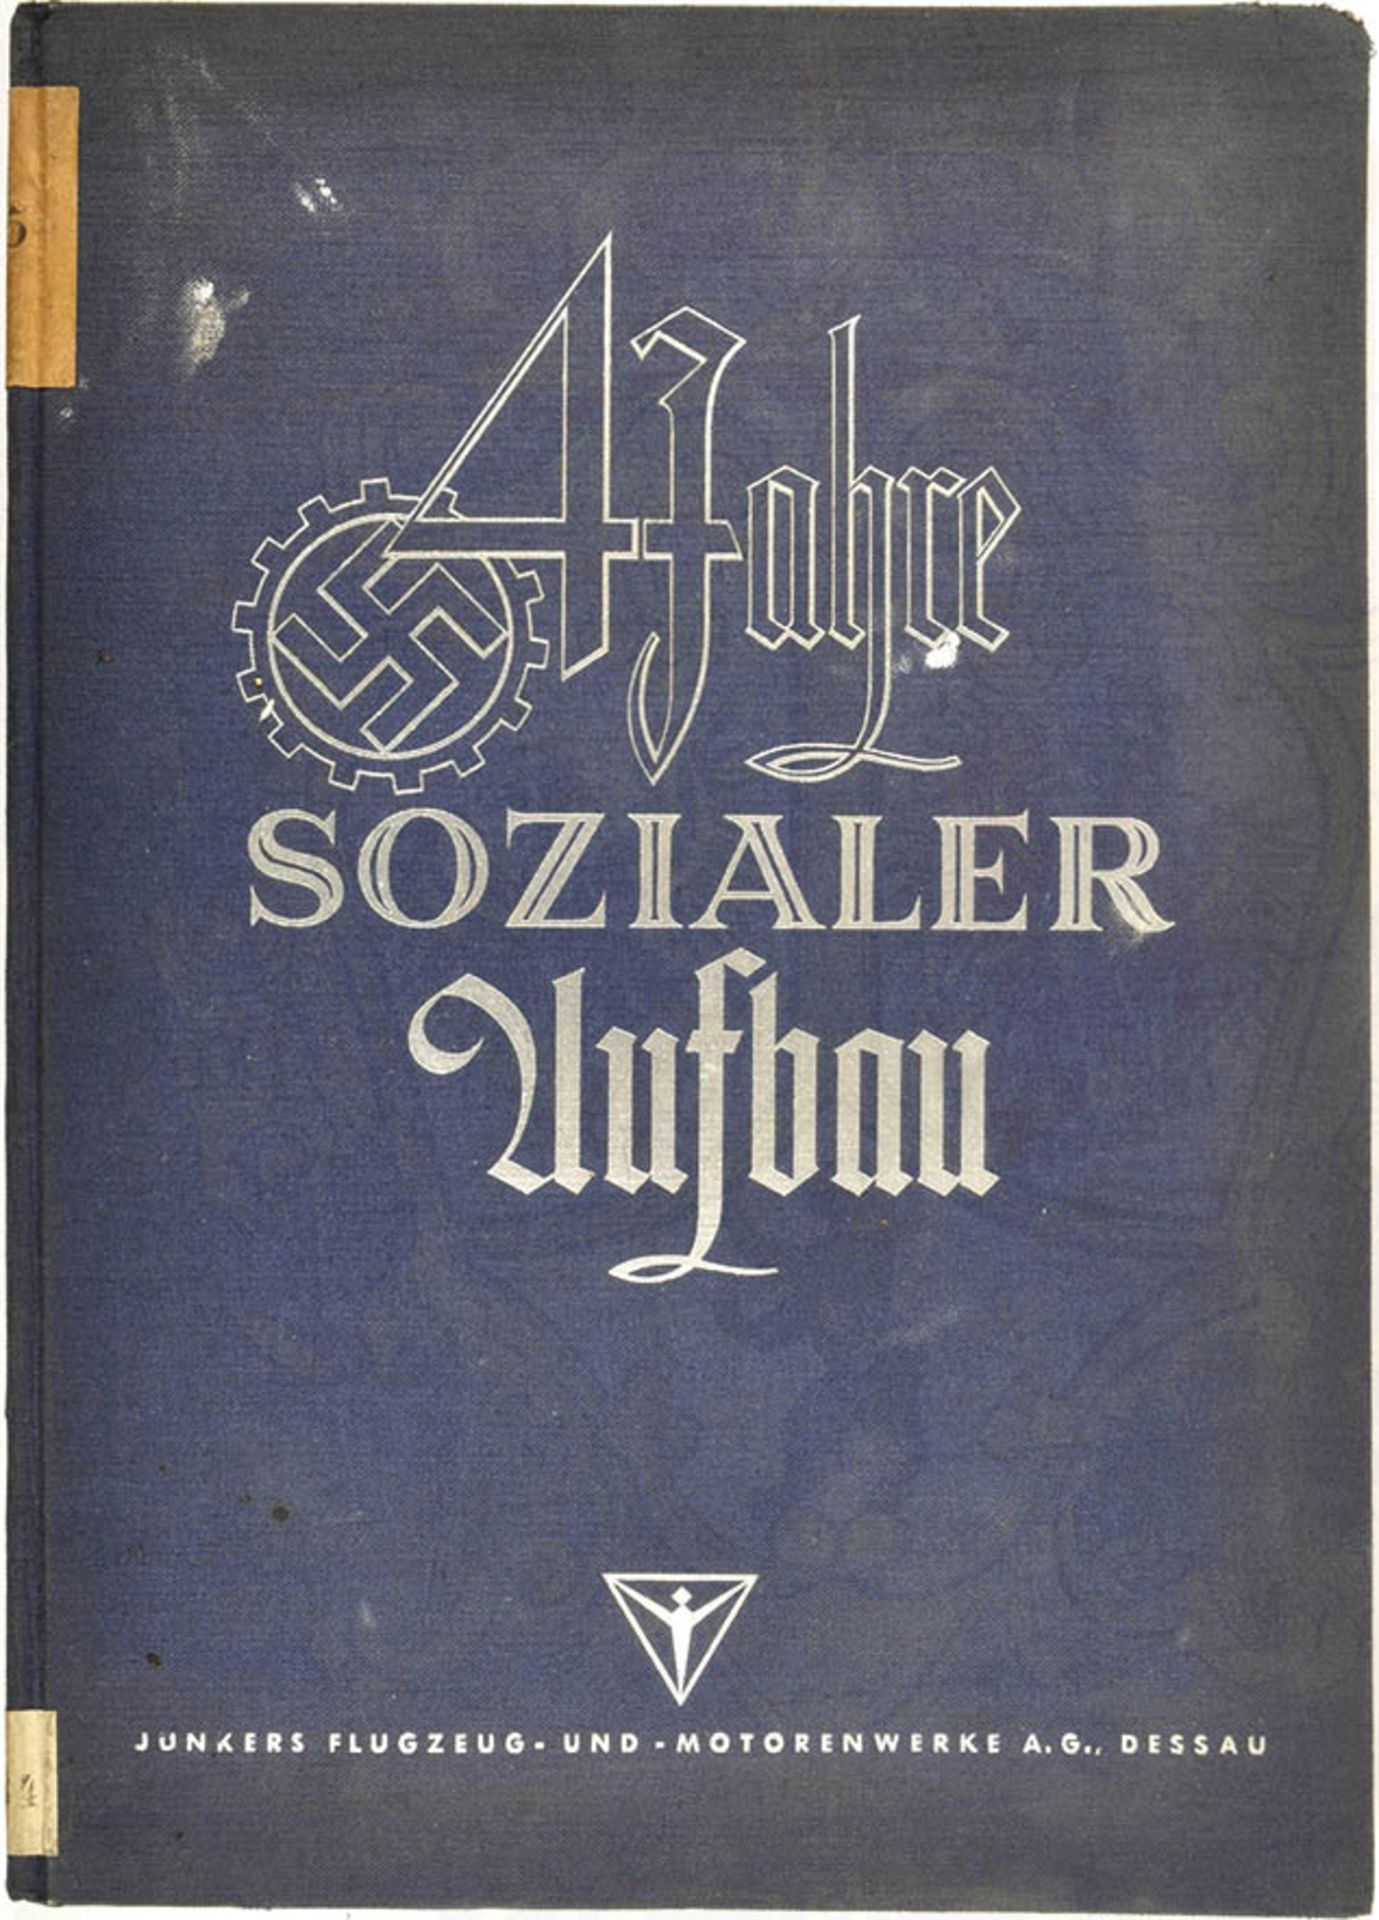 4 JAHRE SOZIALER AUFBAU, Festschrift d. Junkers Flugzeugwerke, Dessau 1937, zahlr. Fotos, 88 S.,